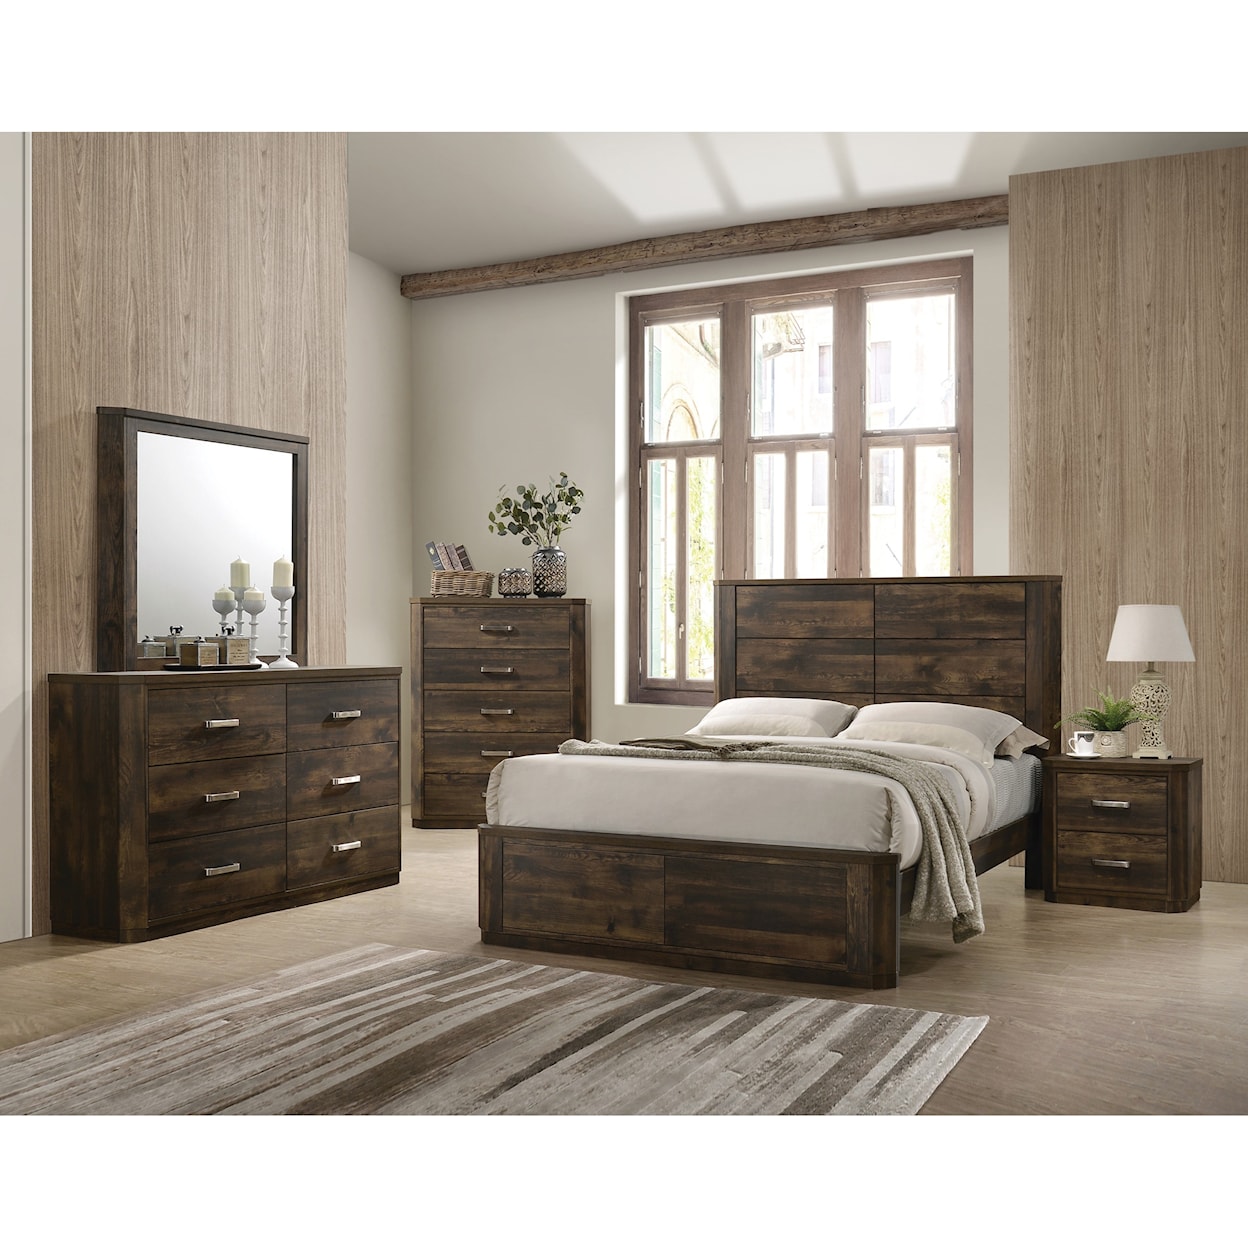 Acme Furniture Elettra Queen Bedroom Group